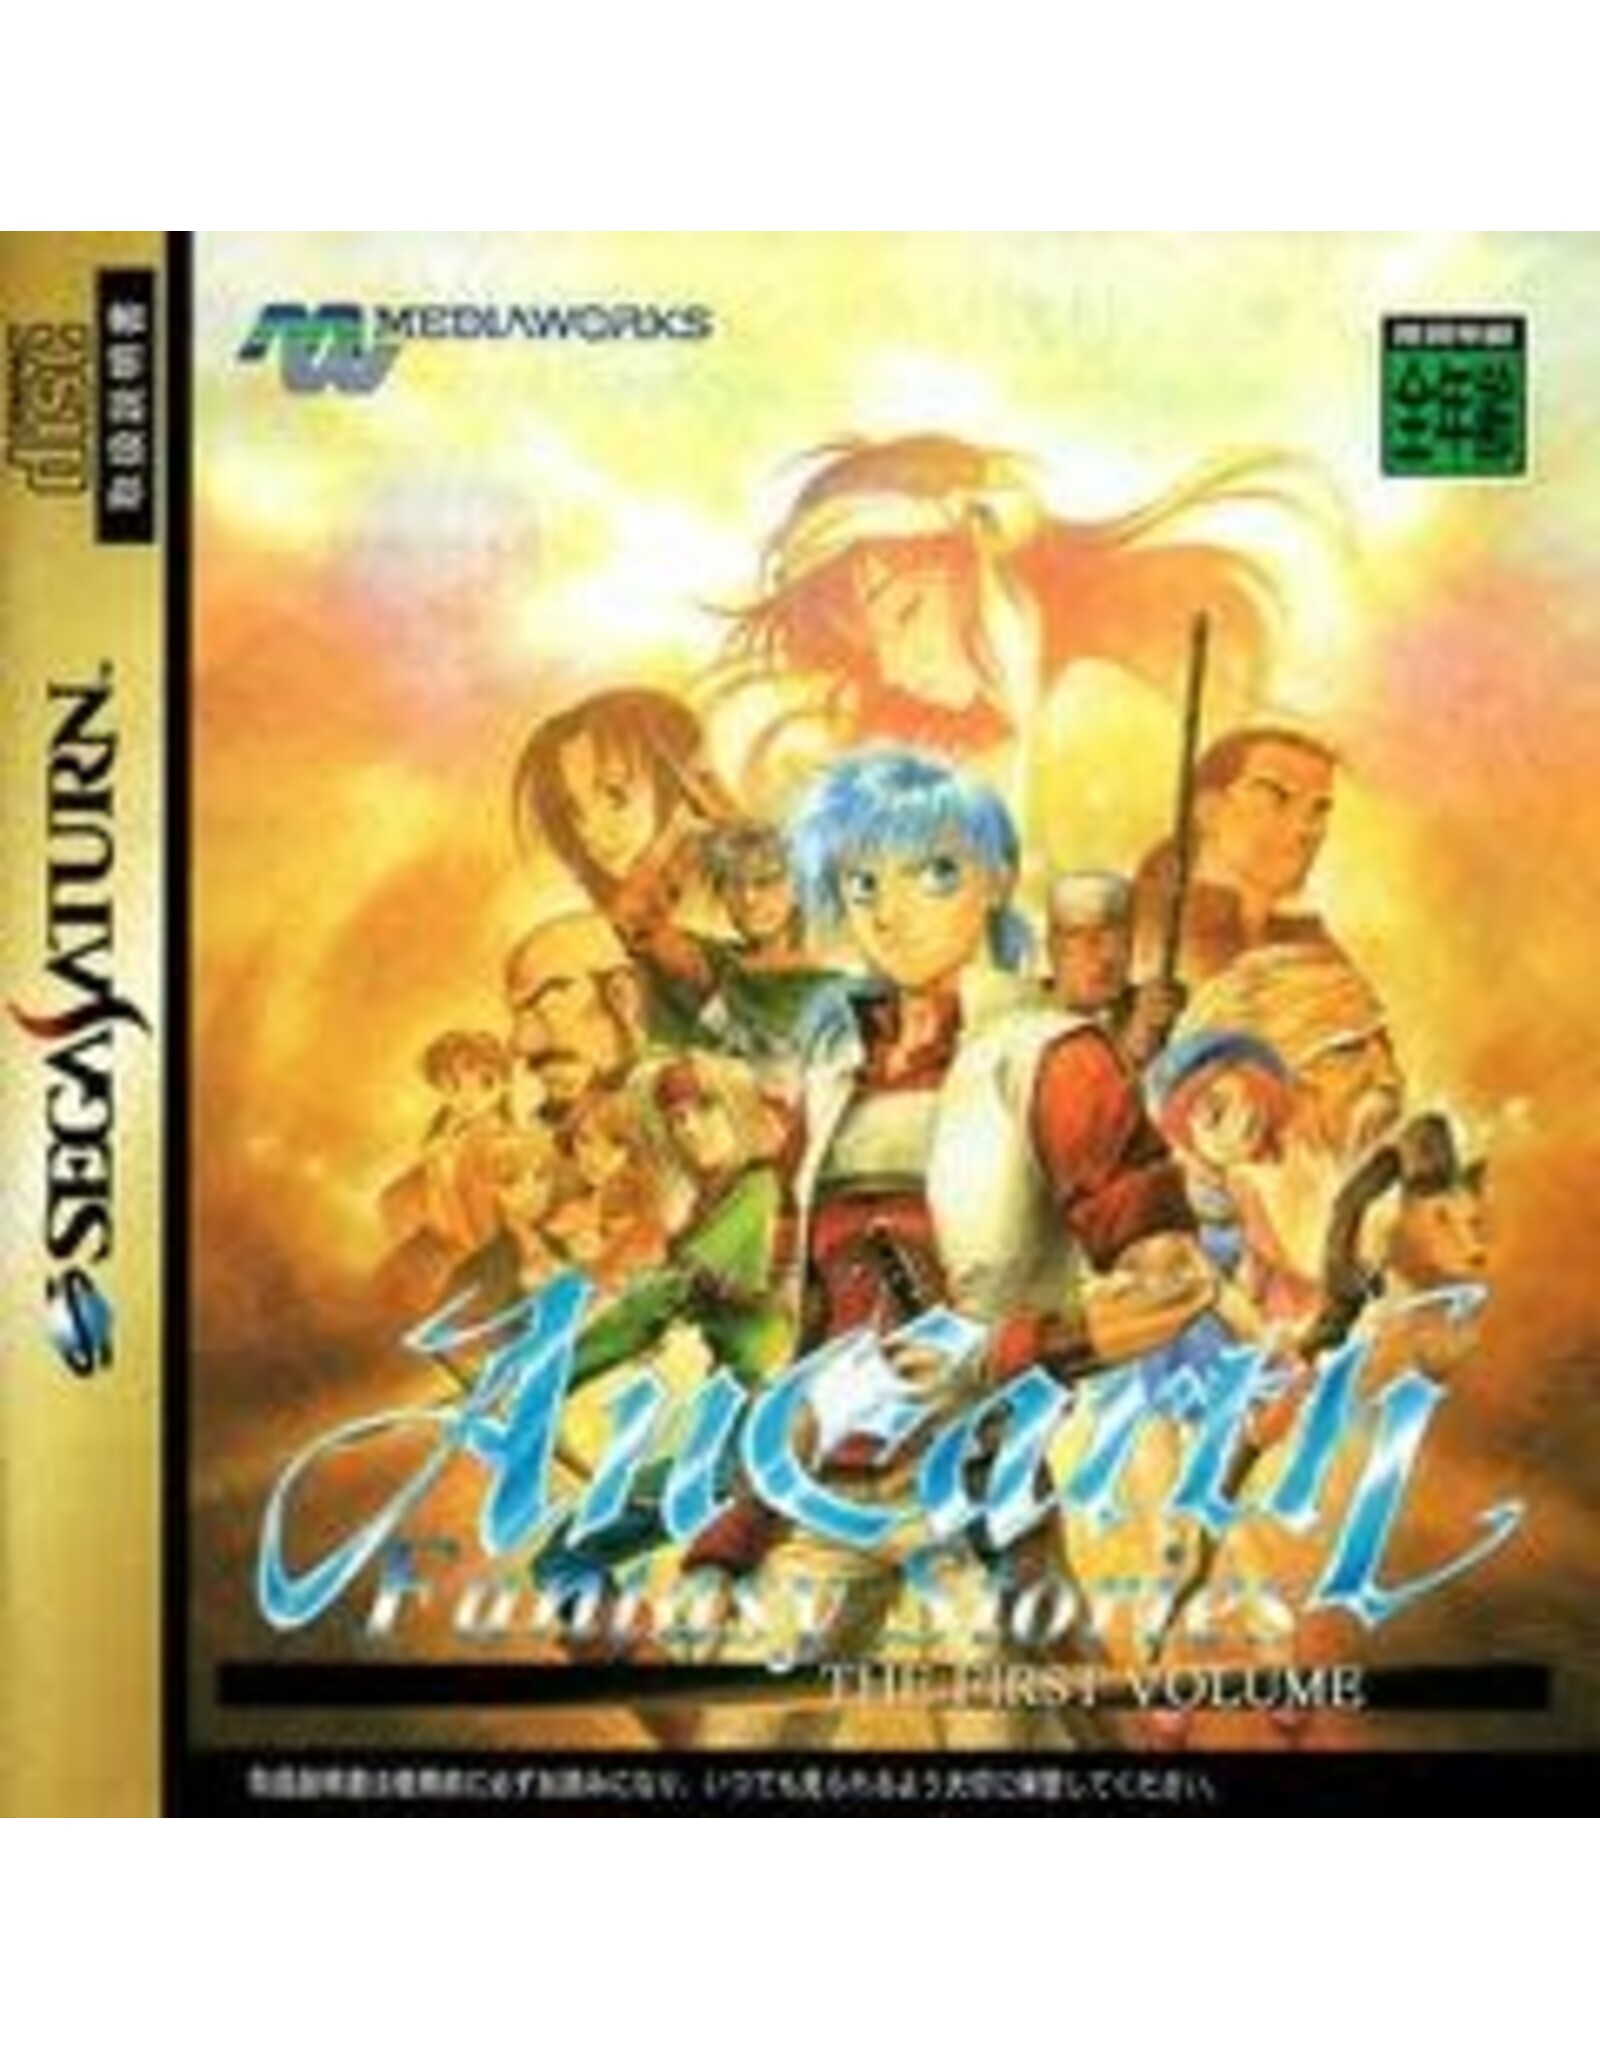 Sega Saturn AnEarth Fantasy Stories - JP Import (Used)